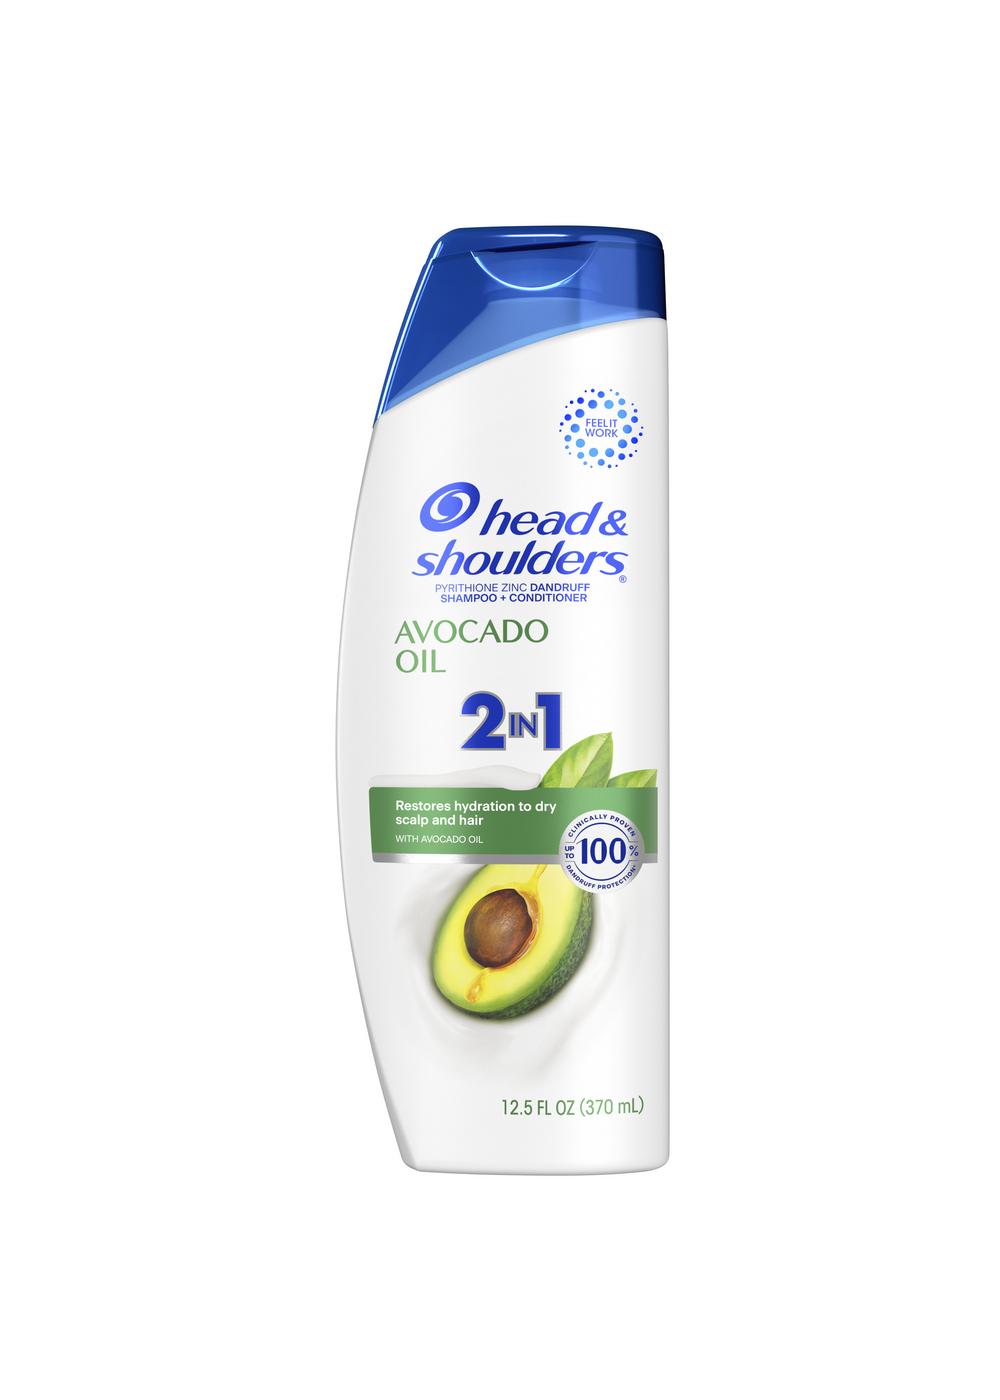 Head & Shoulders Avocado Oil 2 in 1 Shampoo + Conditioner; image 1 of 2